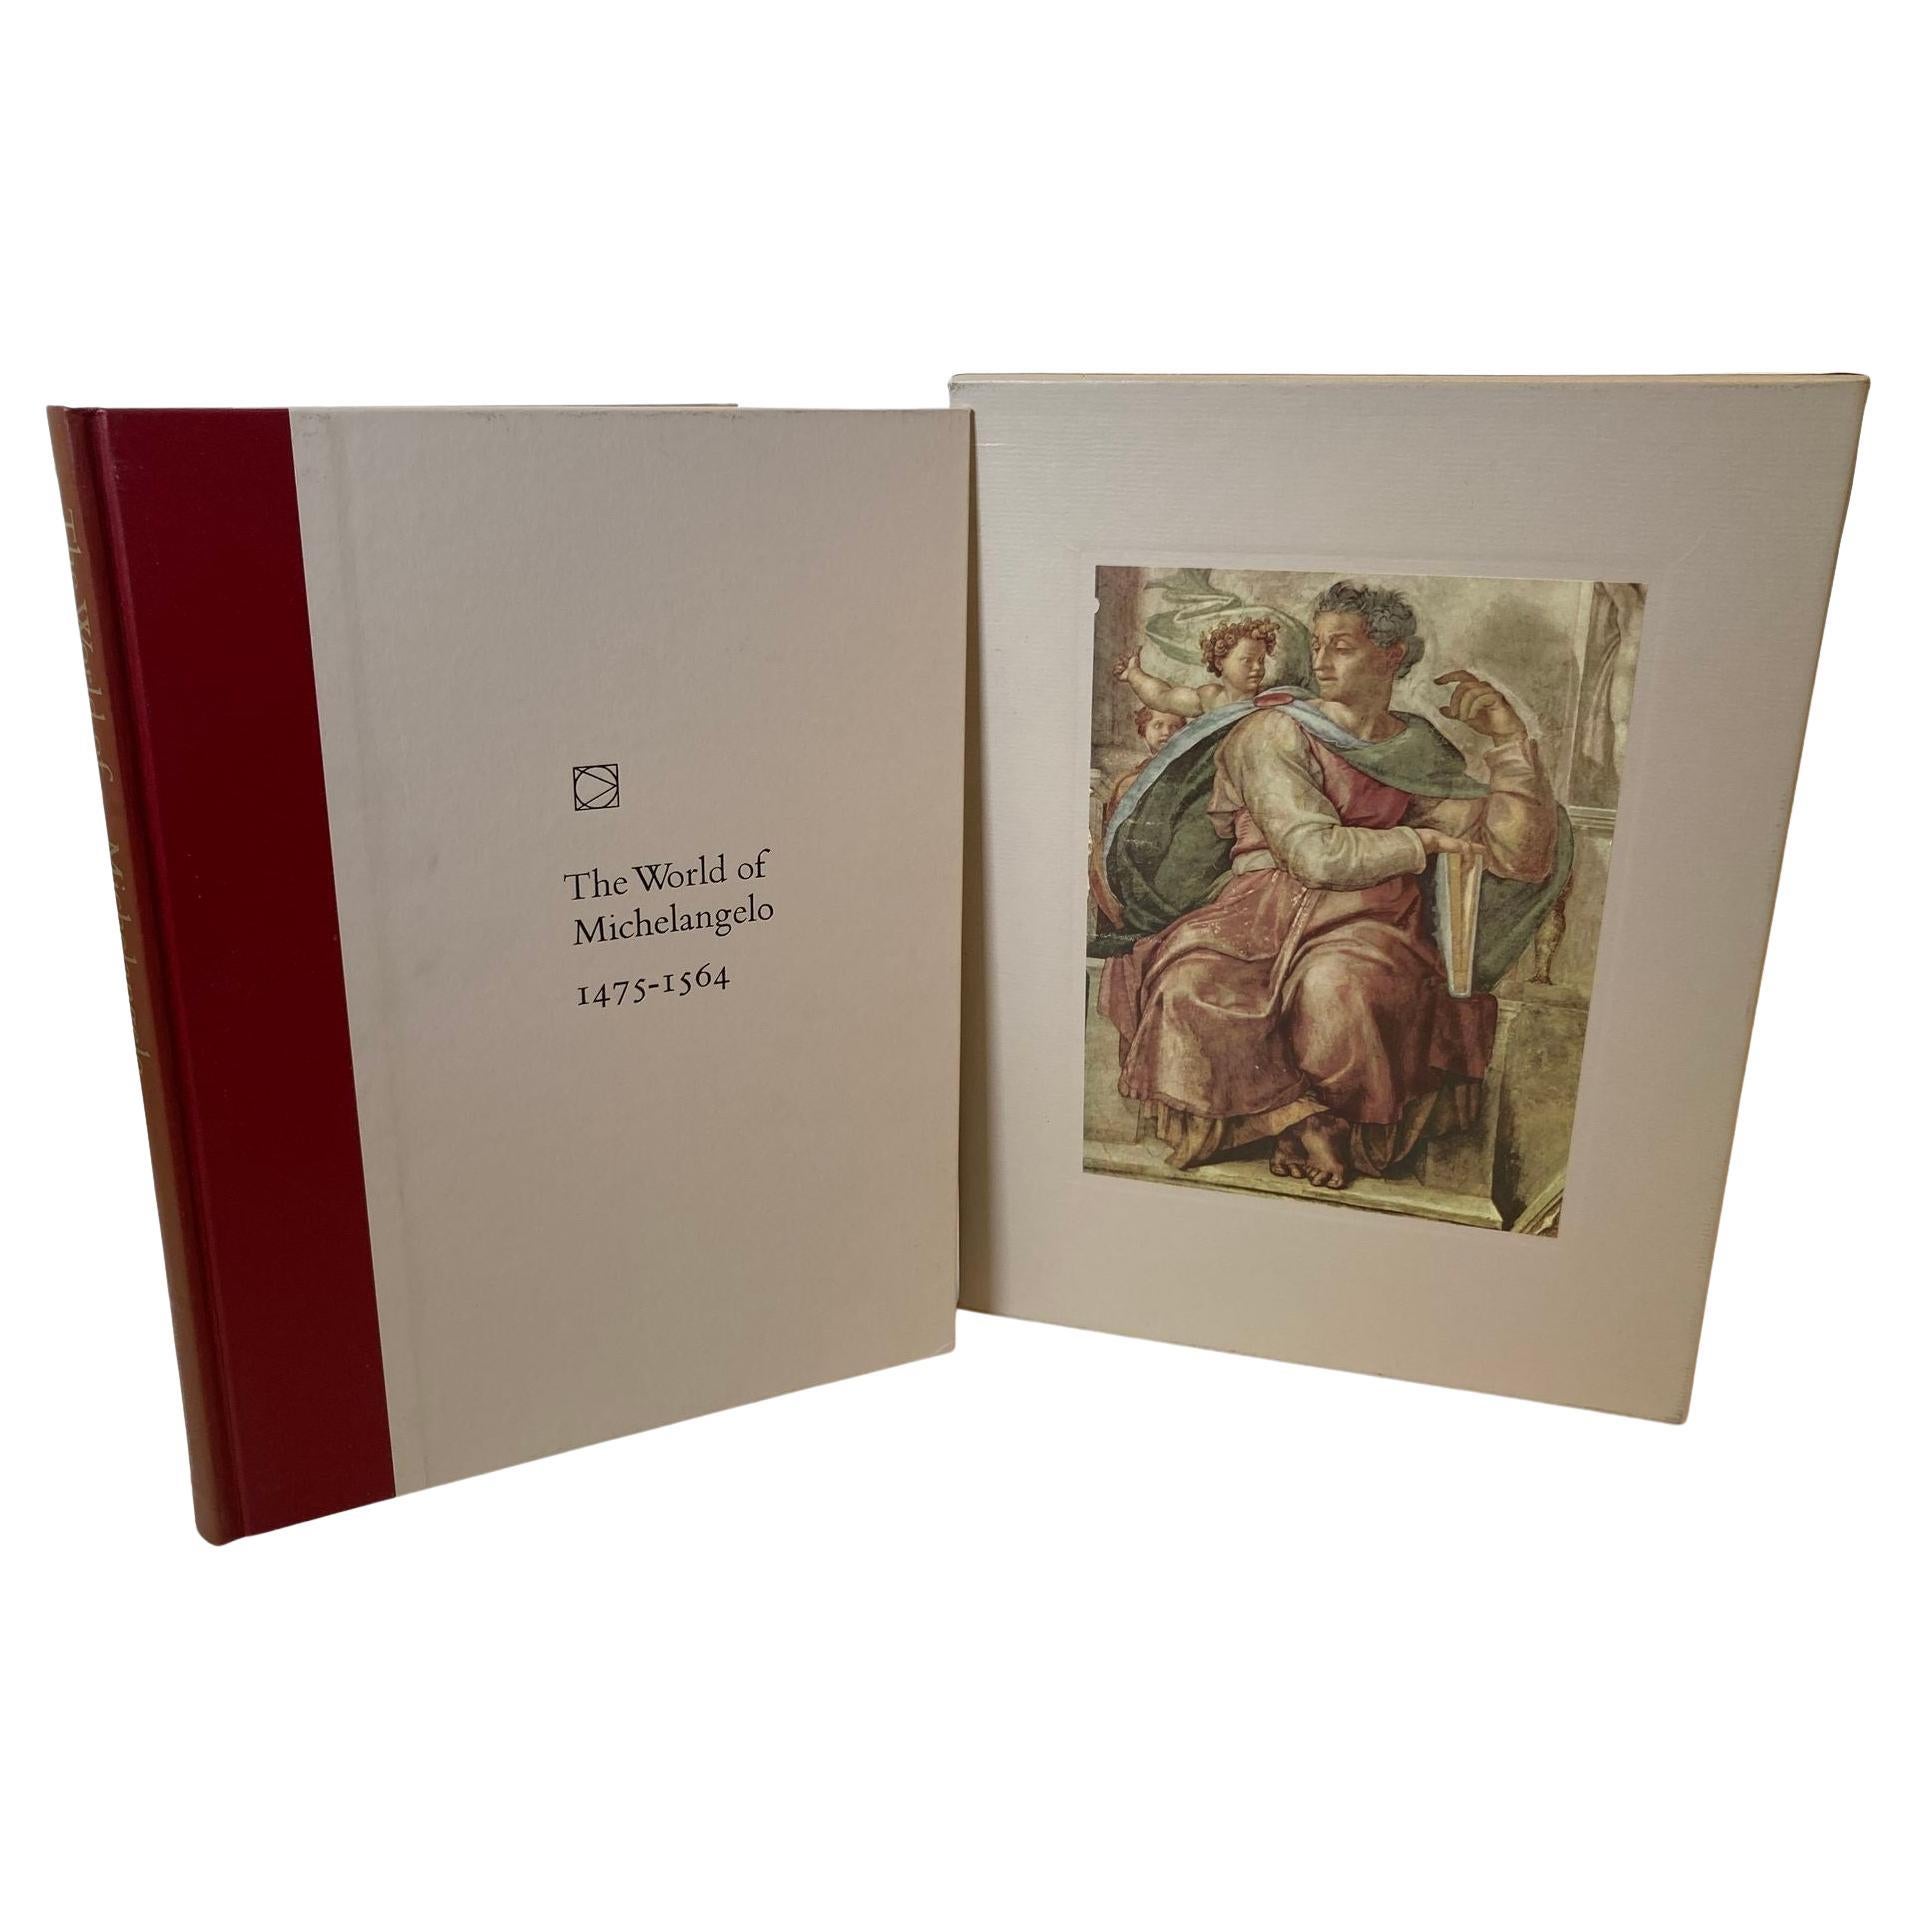 Livre « The World of Michelangelo 1475-1564 » de Robert Coughlan